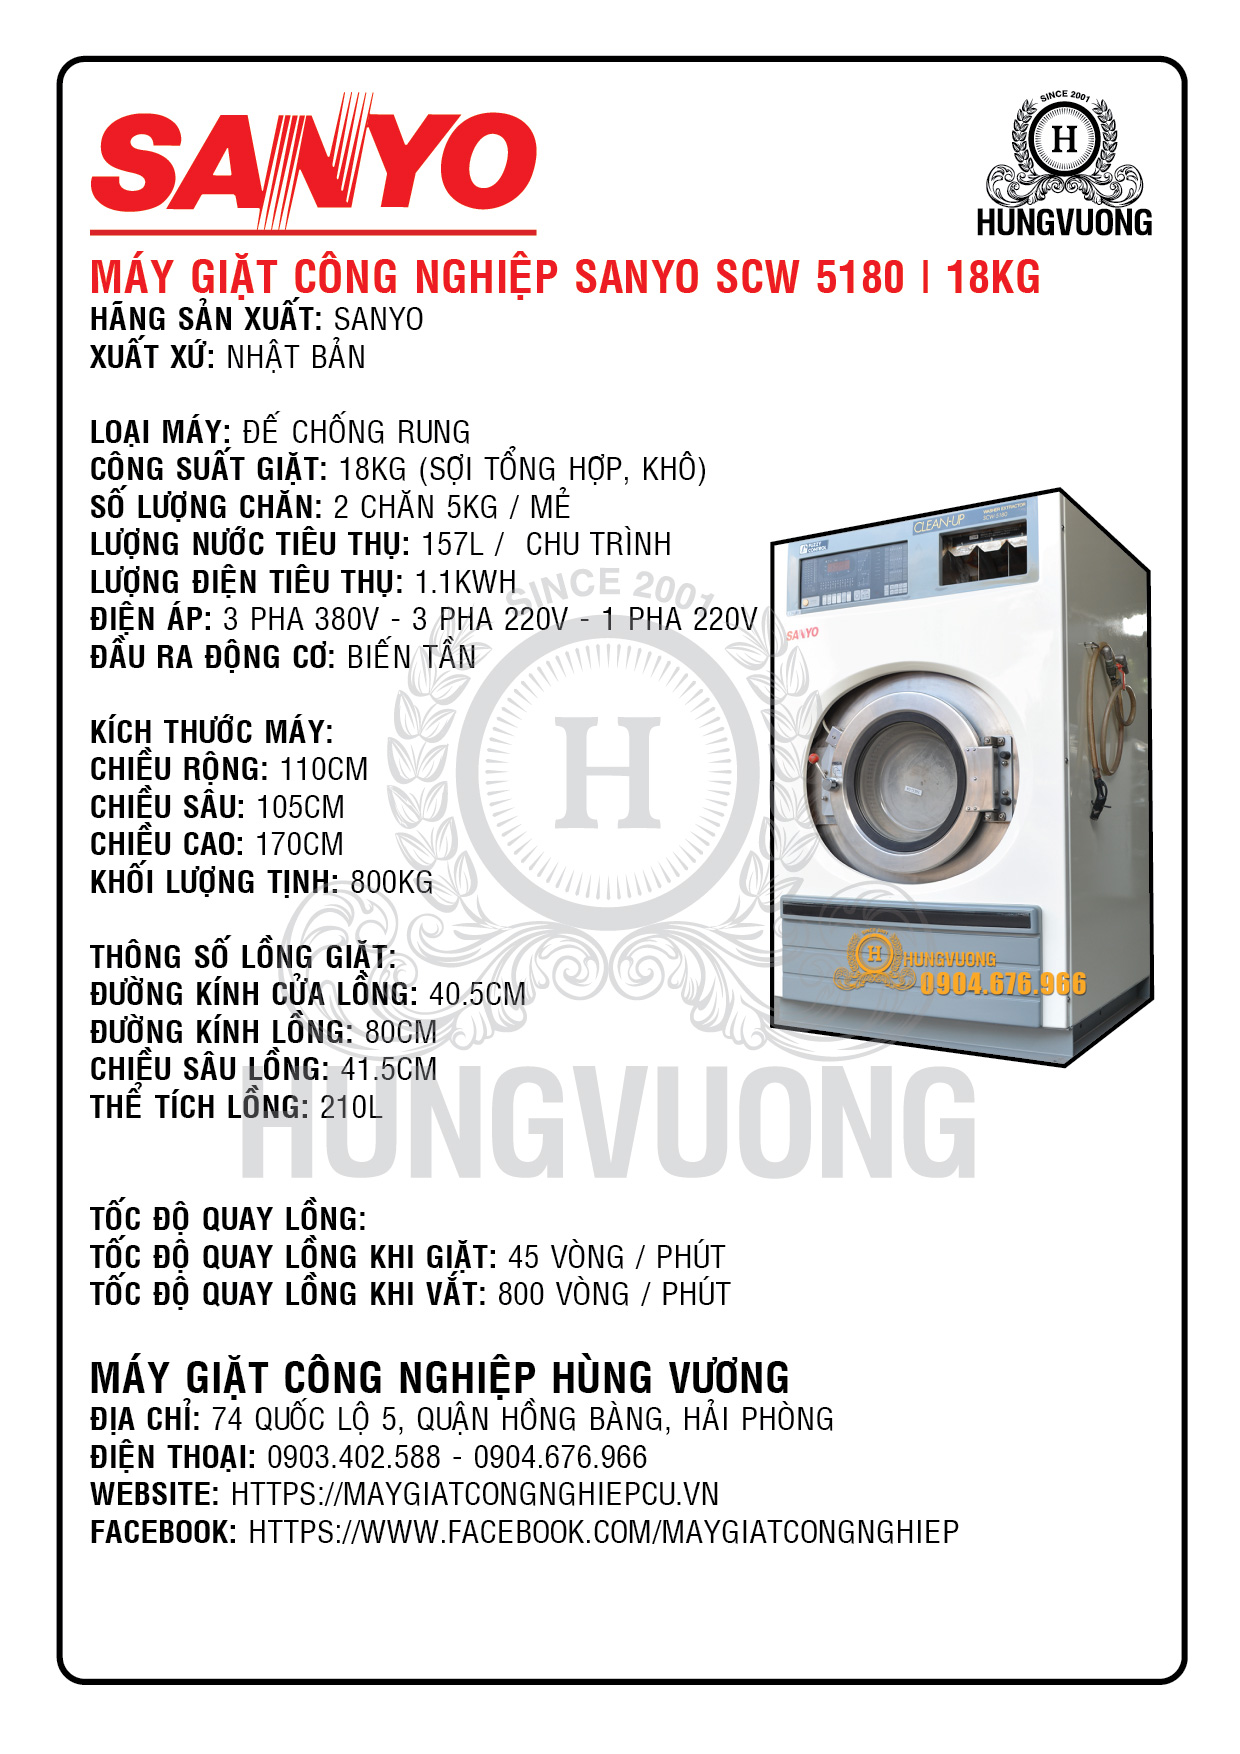 Thông số kỹ thuật máy giặt công nghiệp SANYO SCW 5180, 18kg, chống rung, biến tần, Nhật Bản